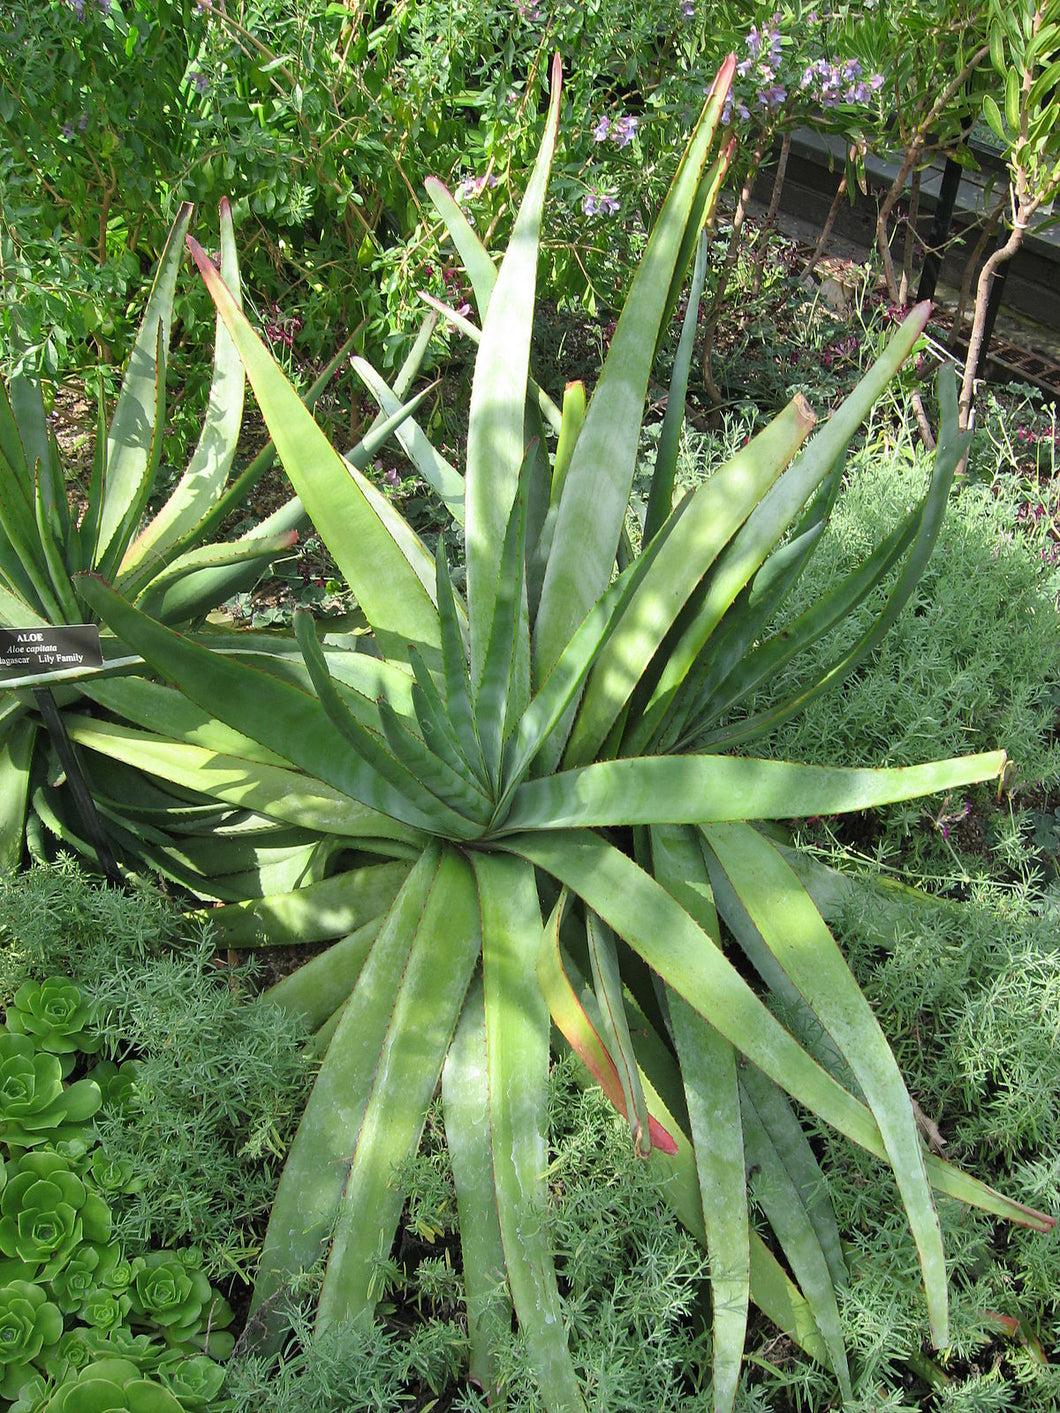 Aloe capitata (10 Seeds) Madagascar